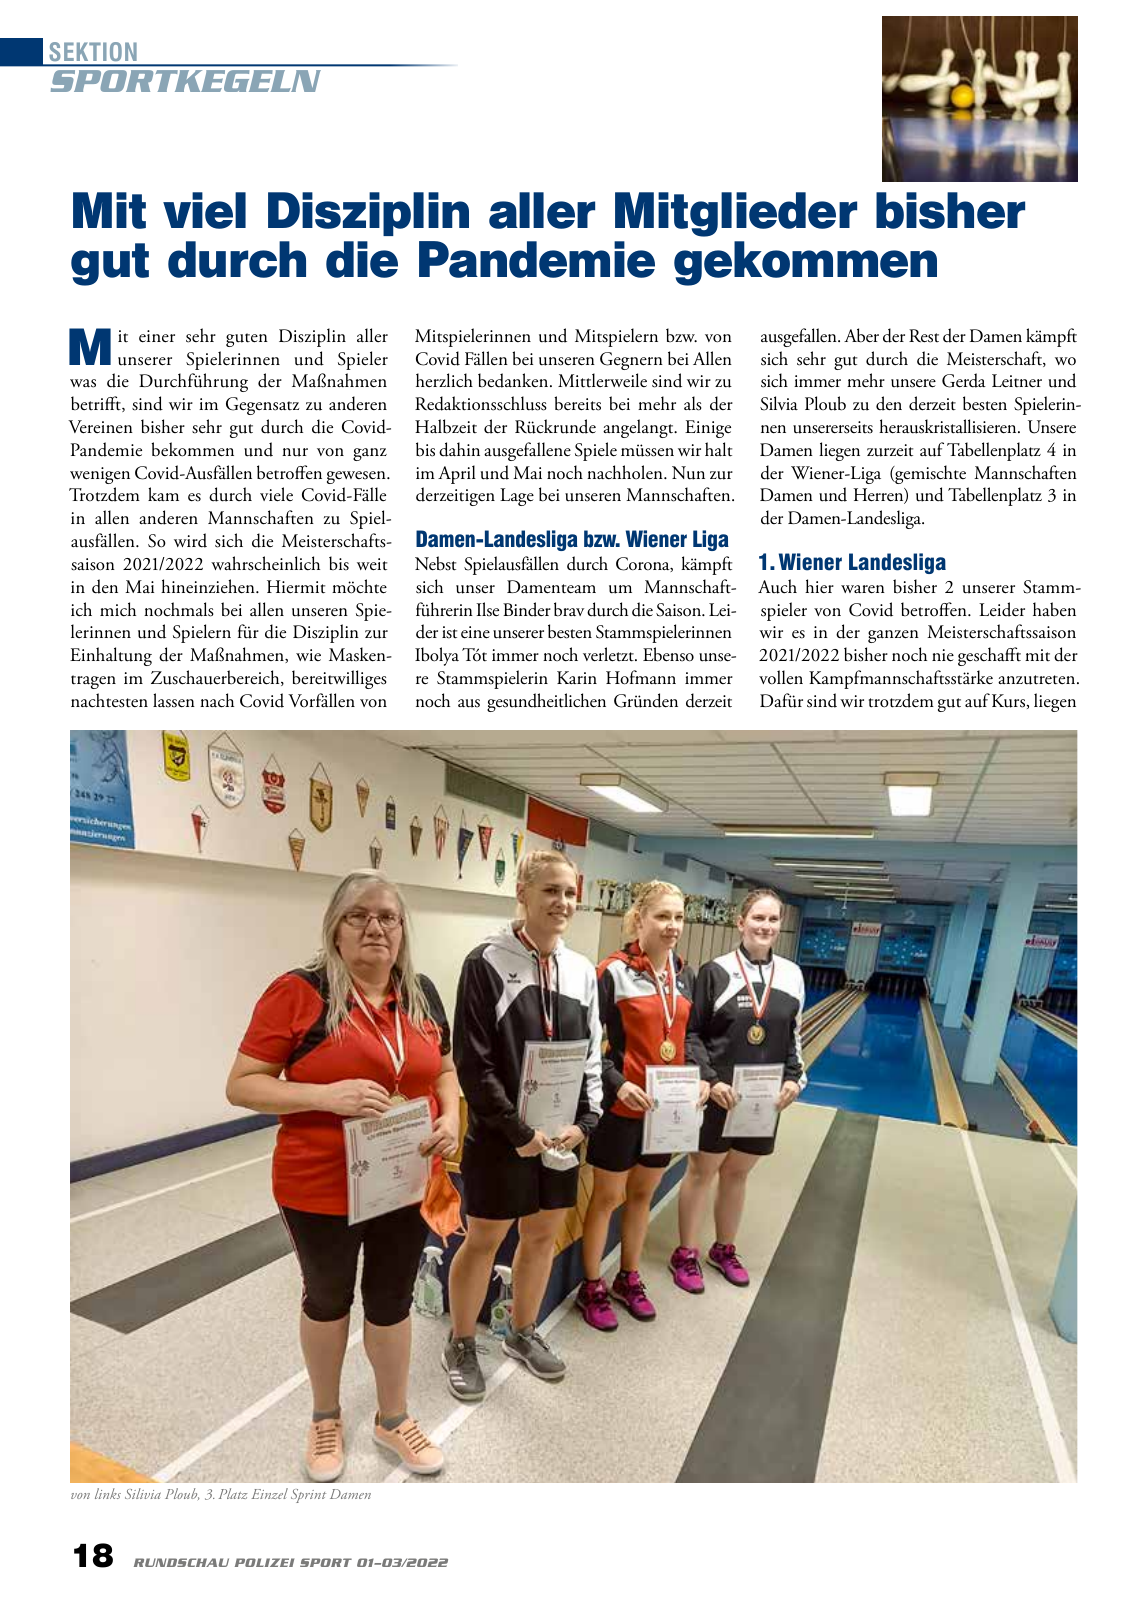 Vorschau Rundschau Polizei Sport 01-03/2022 Seite 18